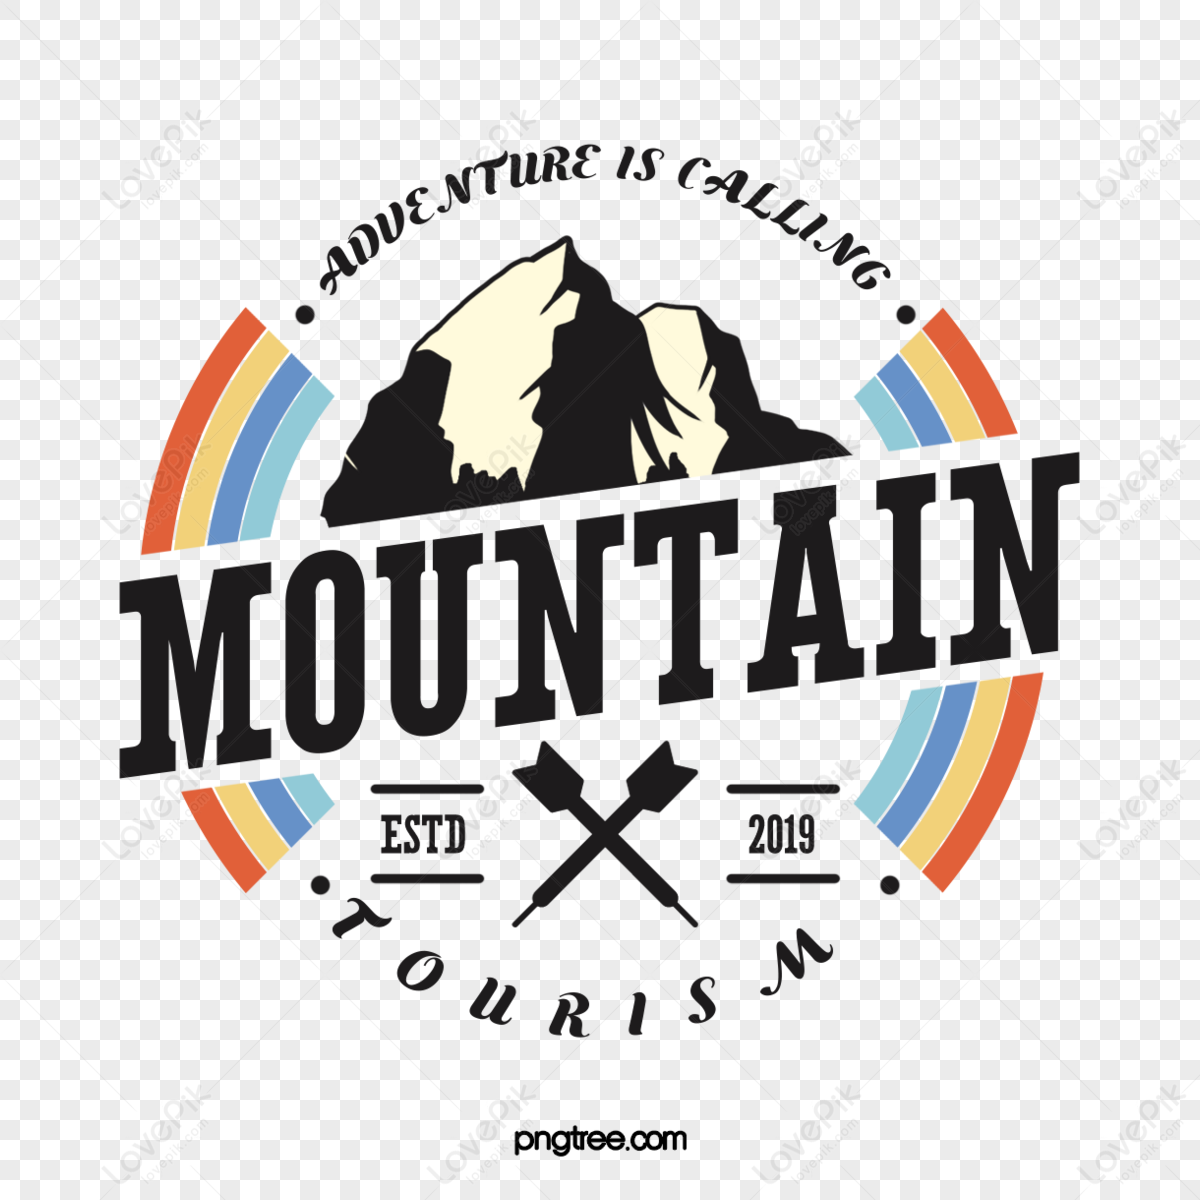 California's Family Mountain | Kids 12-Under Ski Free | June Mountain